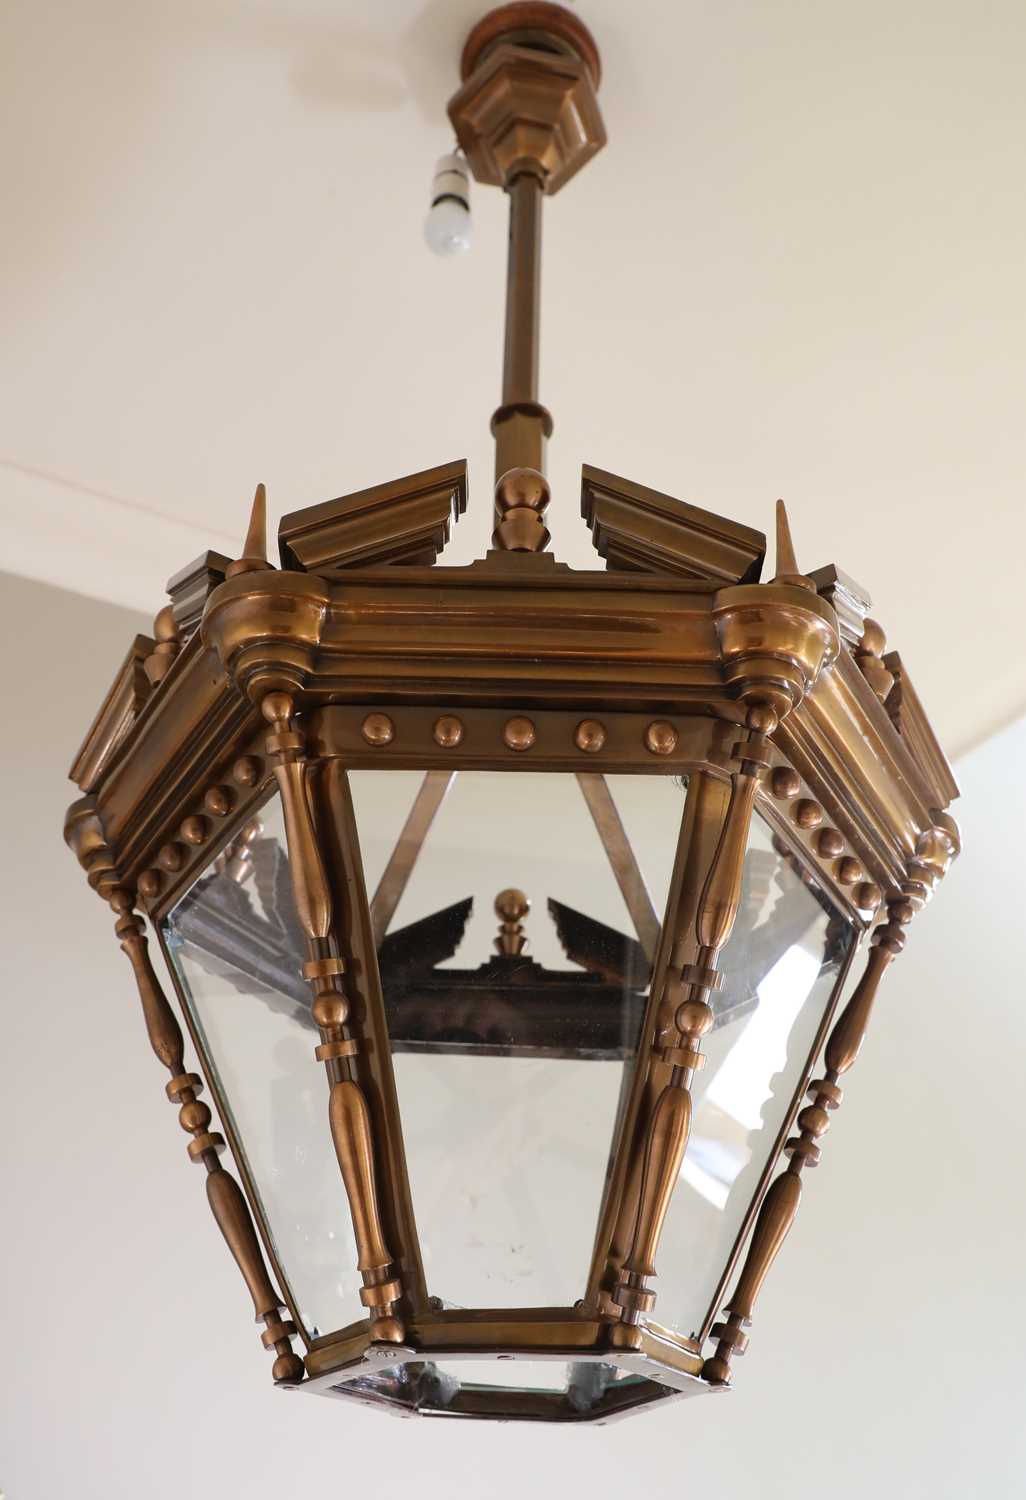 An hexagonal bronze lantern,